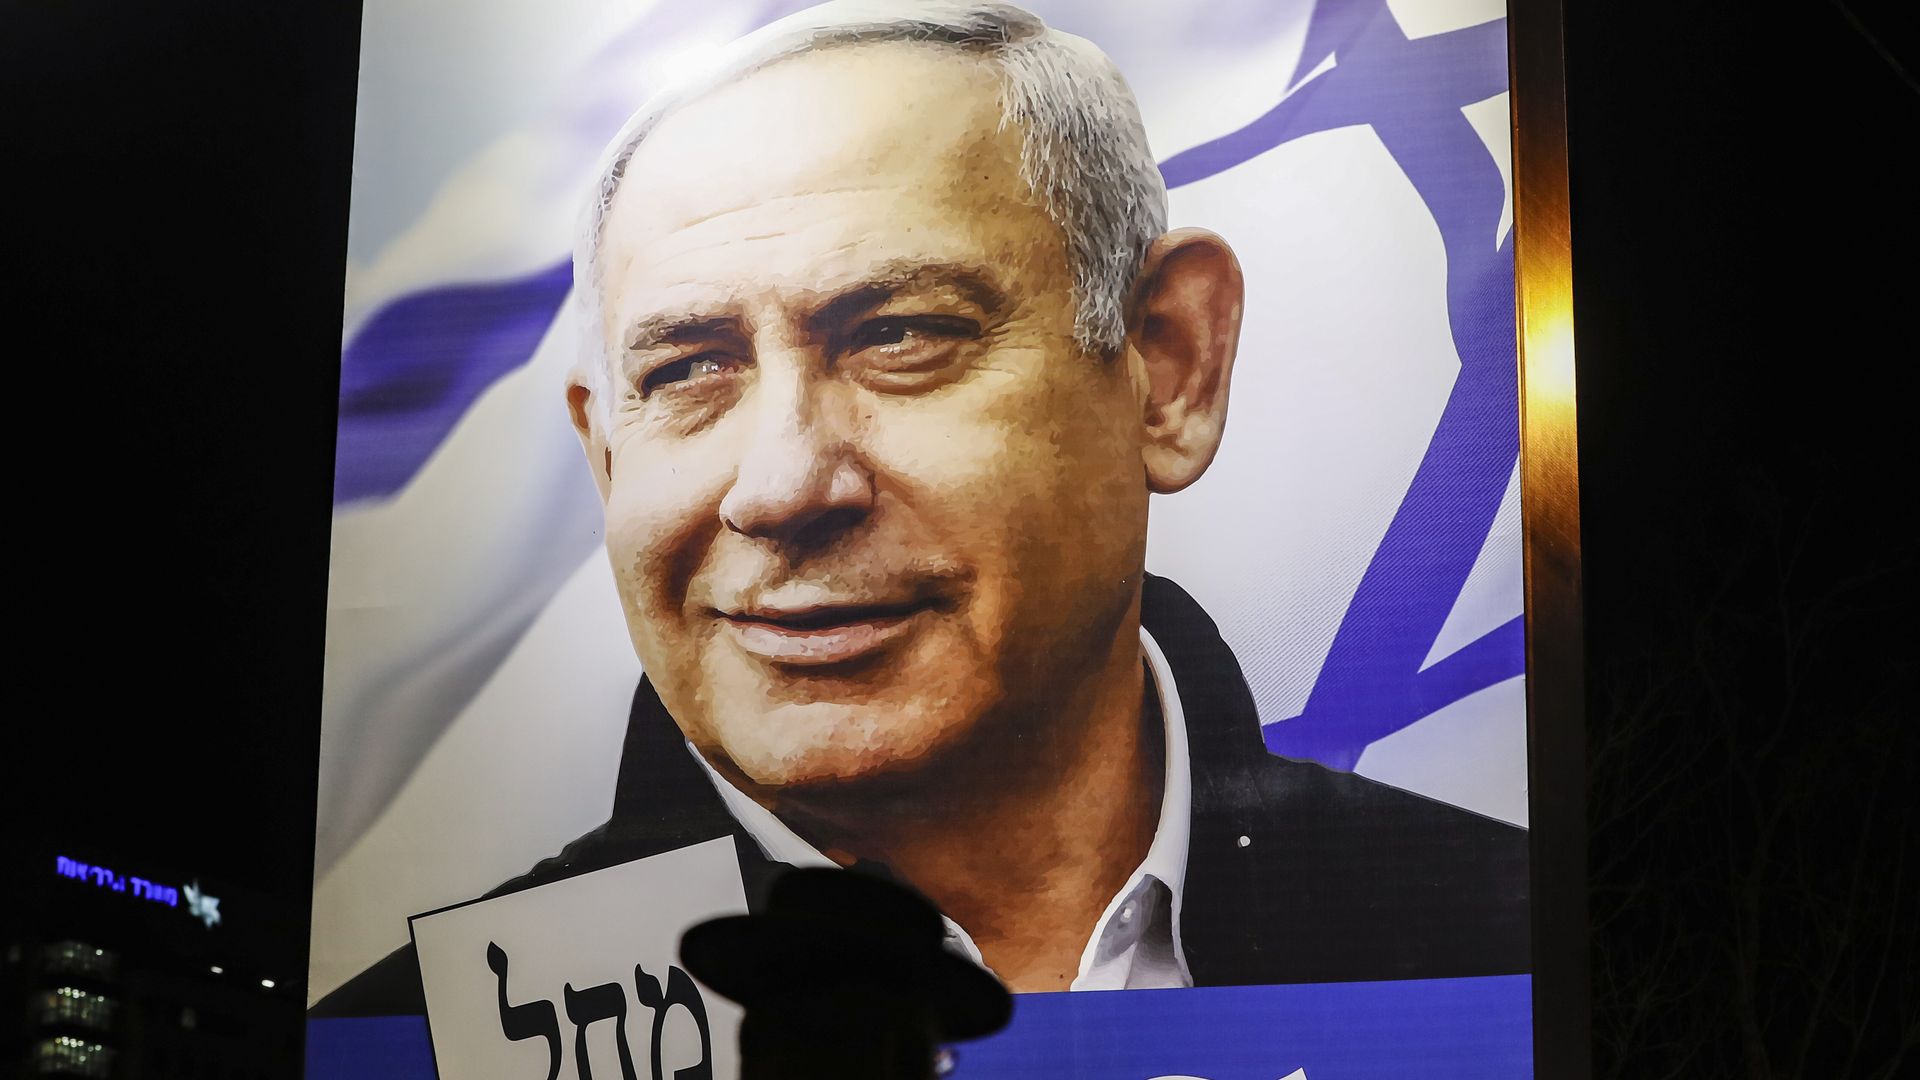 Billboard of Benjamin Netanyahu